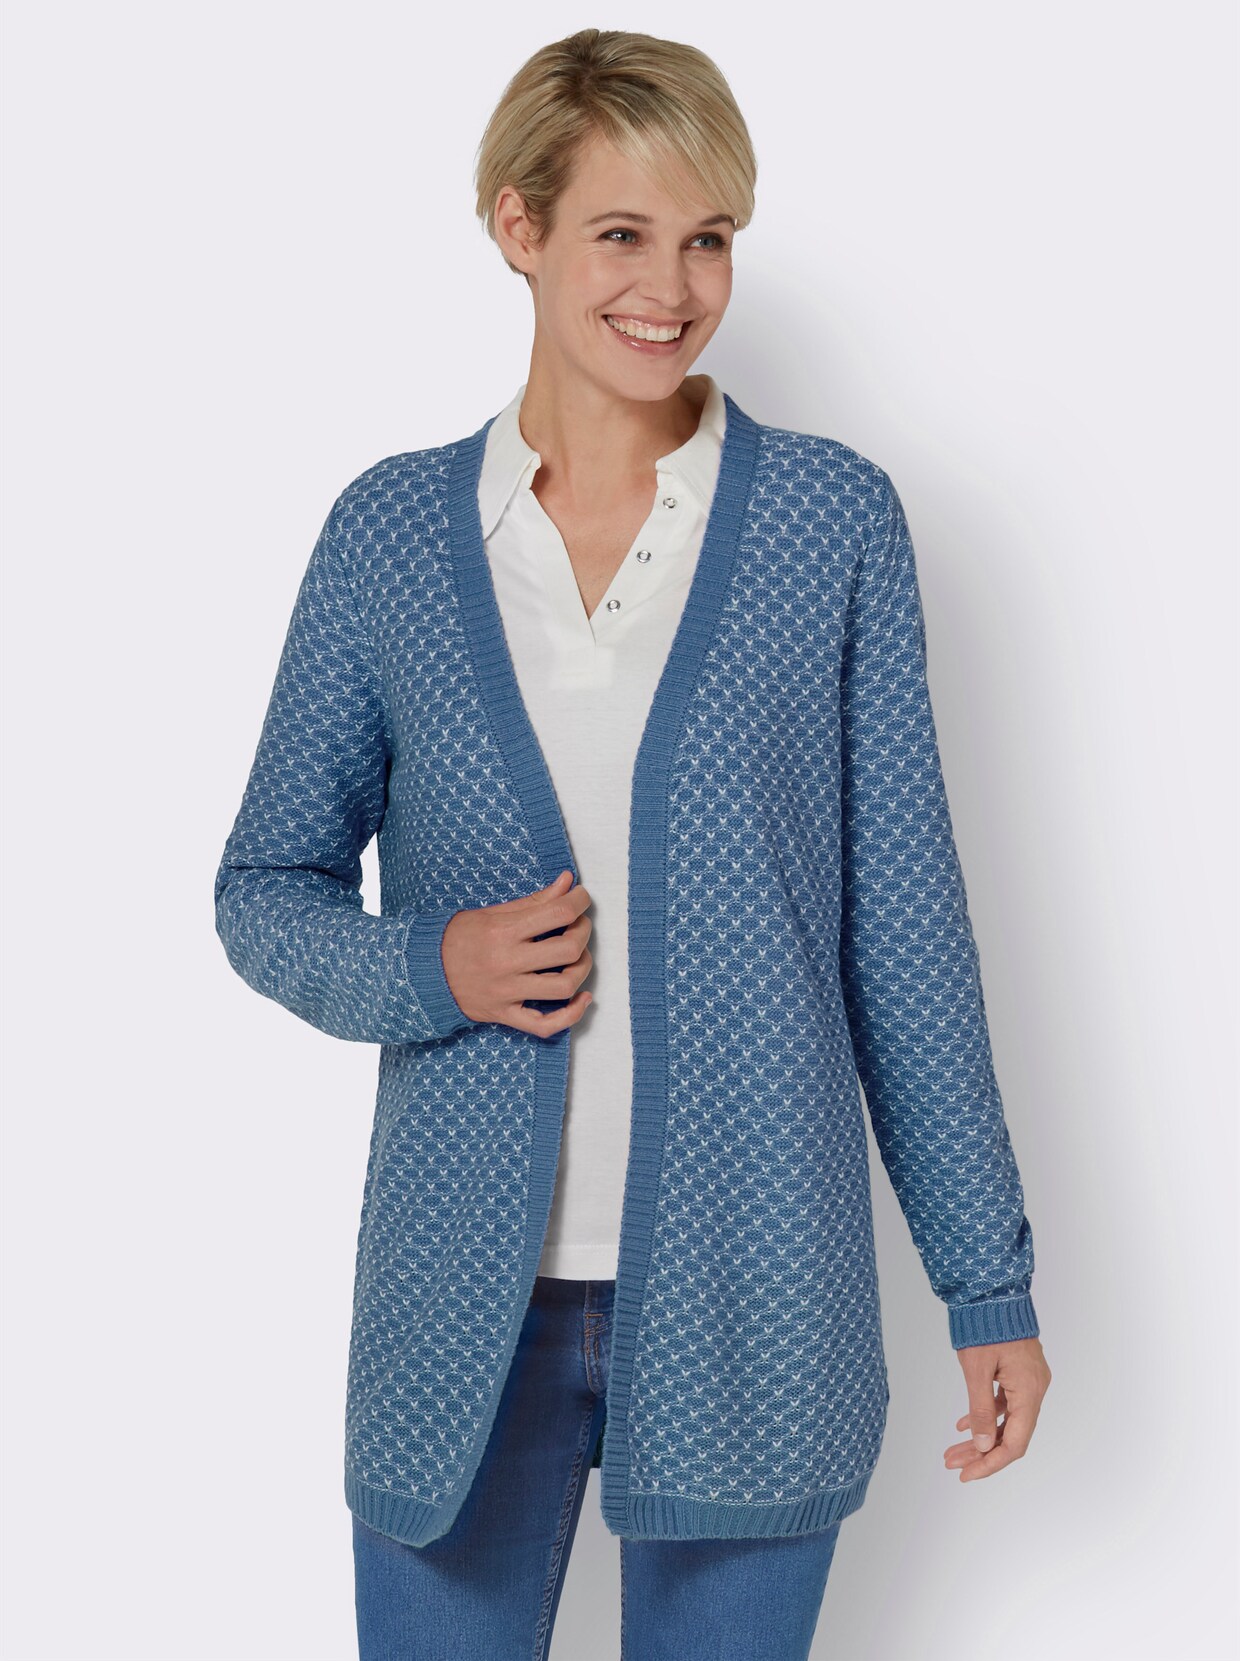 Dlouhý pletený kabátek - střední modrá